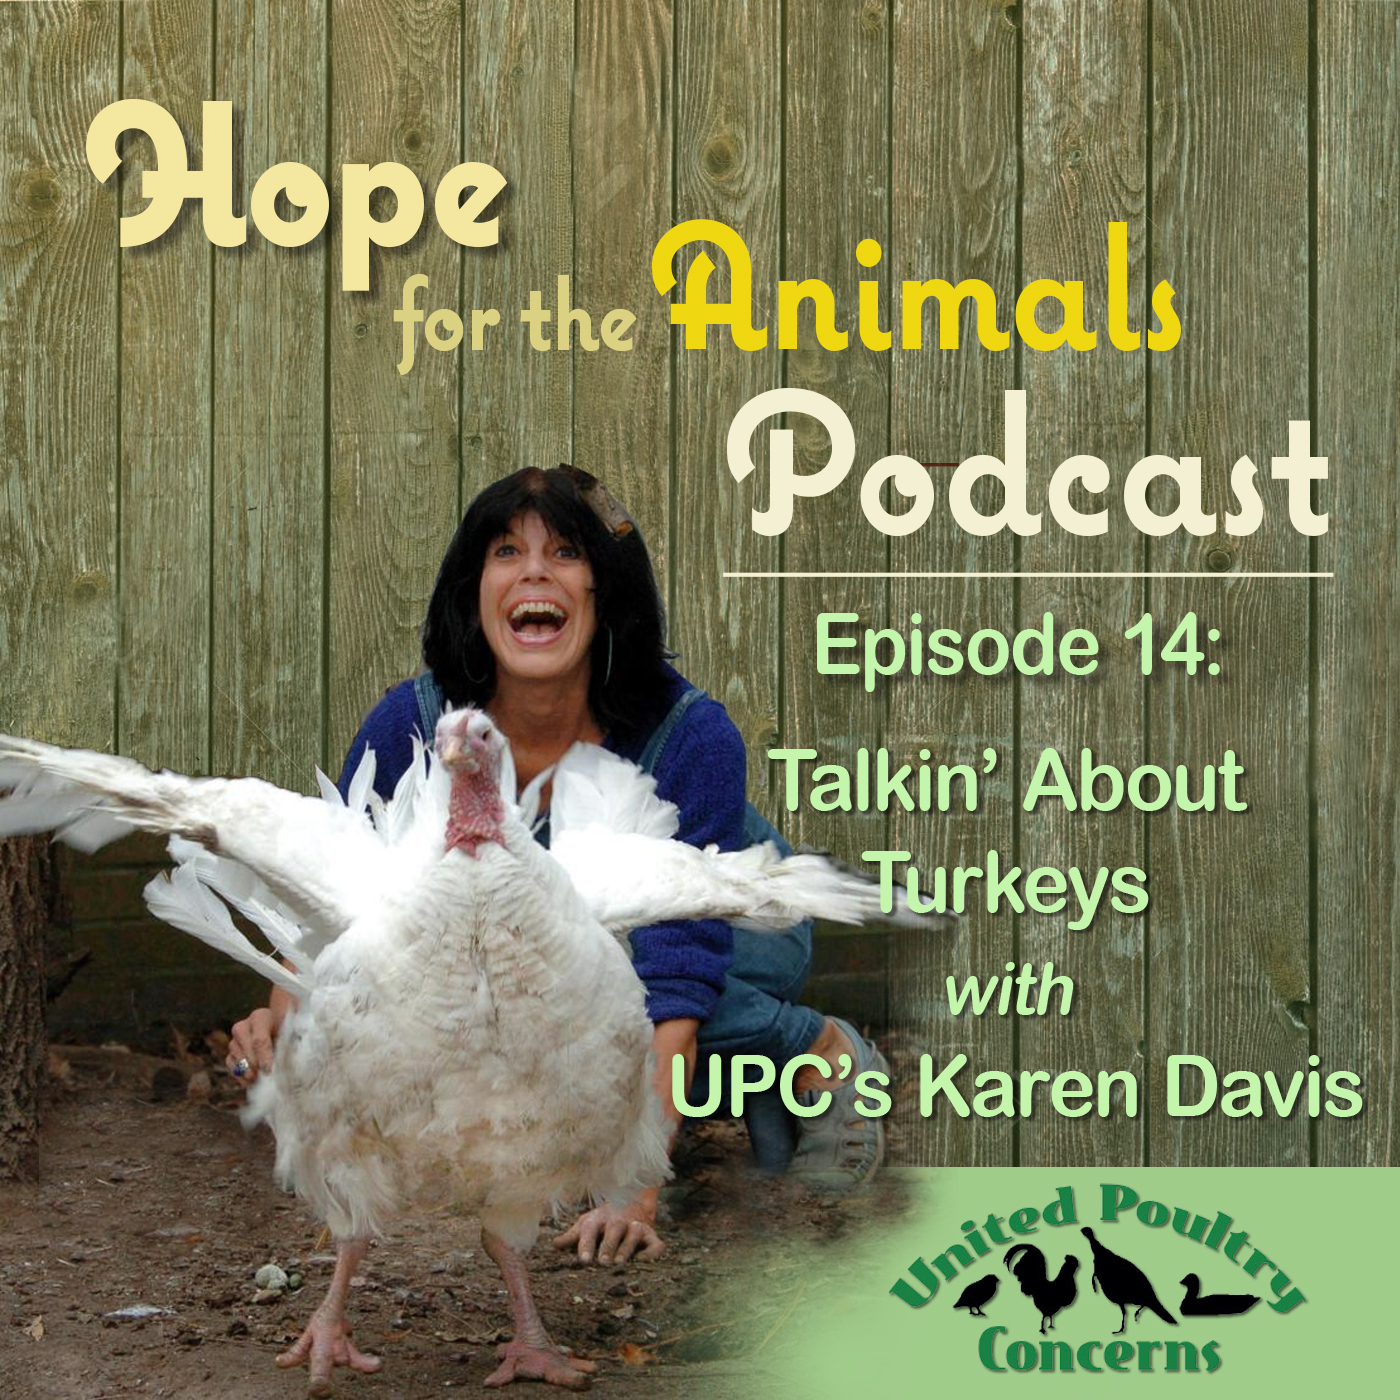 Episode 14: Talkin’ About Turkeys with UPC’s Karen Davis